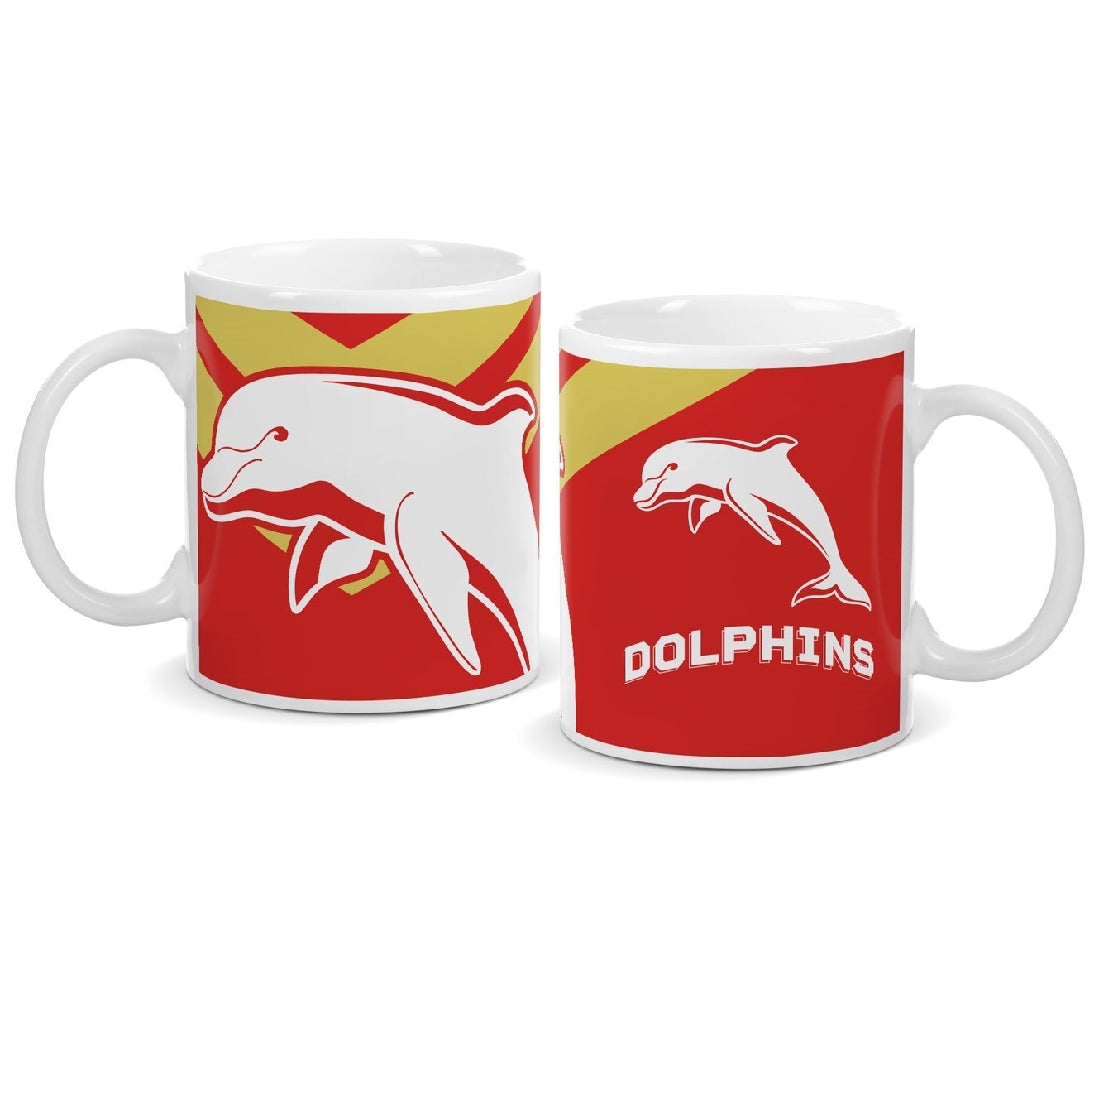 Dolphins Ceramic Mug